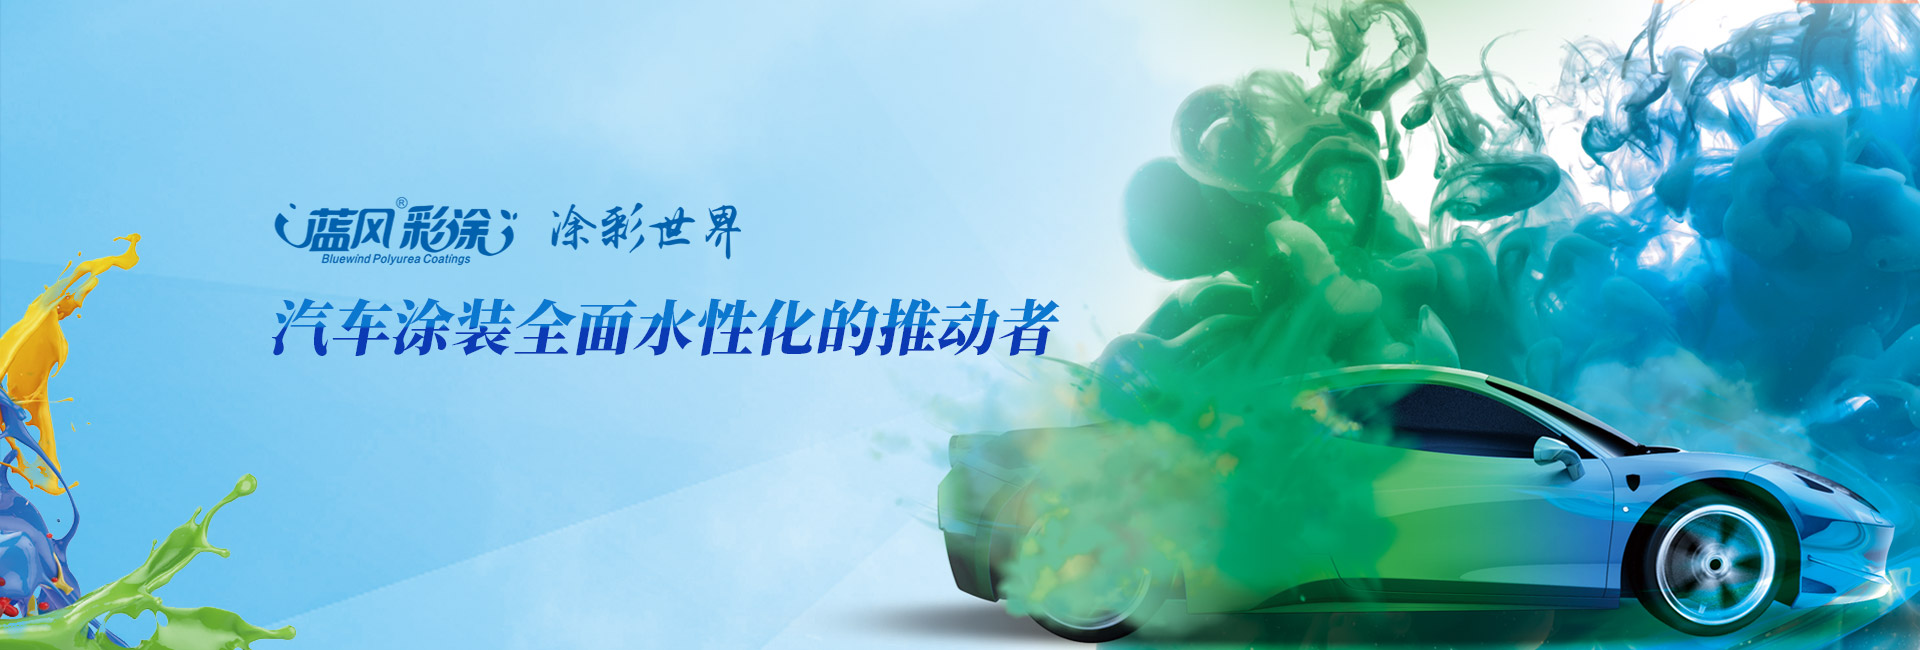 南京蓝风新材料科技有限公司